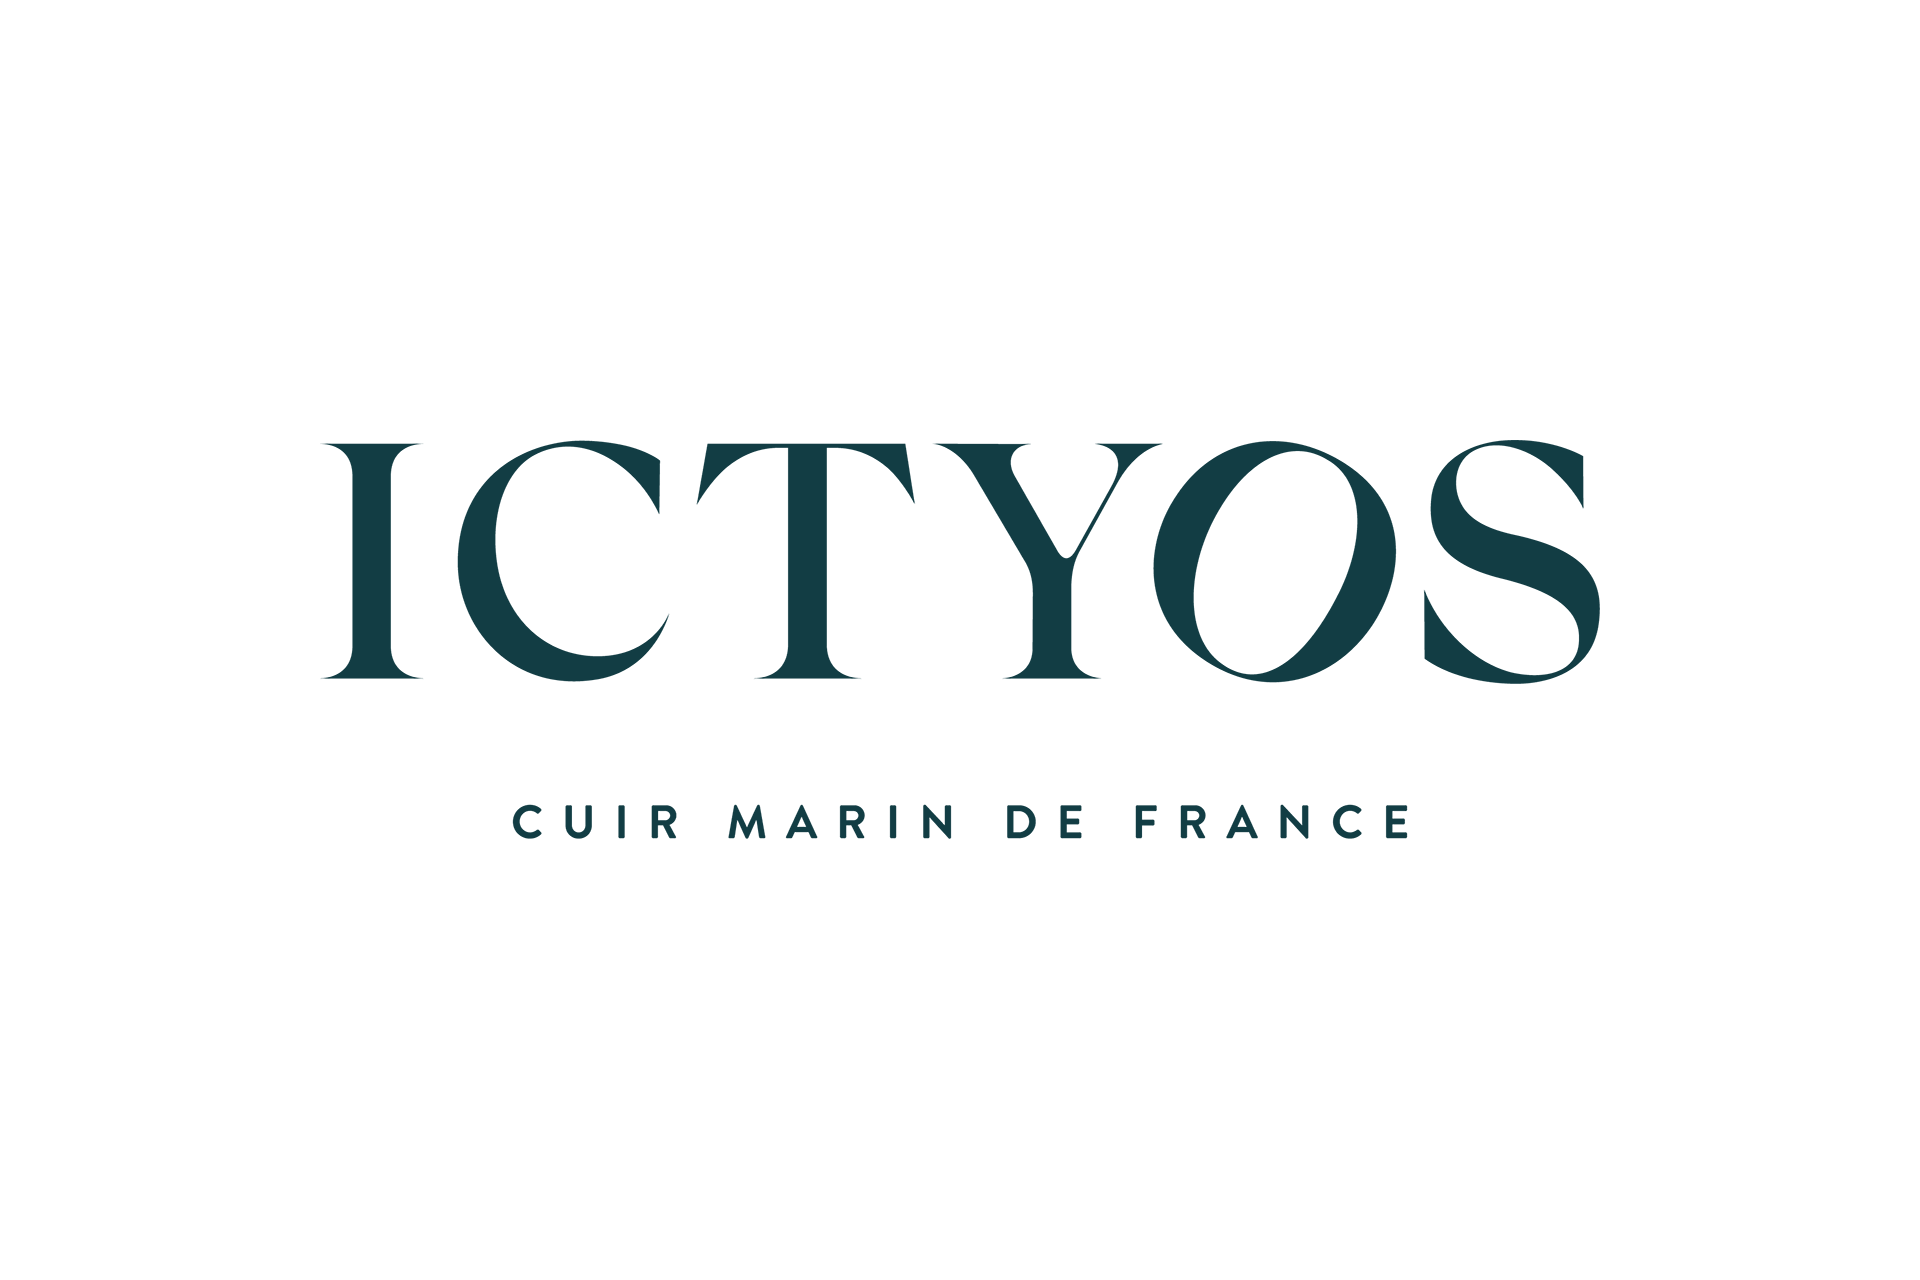 Logo de l’entreprise Ictyos, cuir marin de France